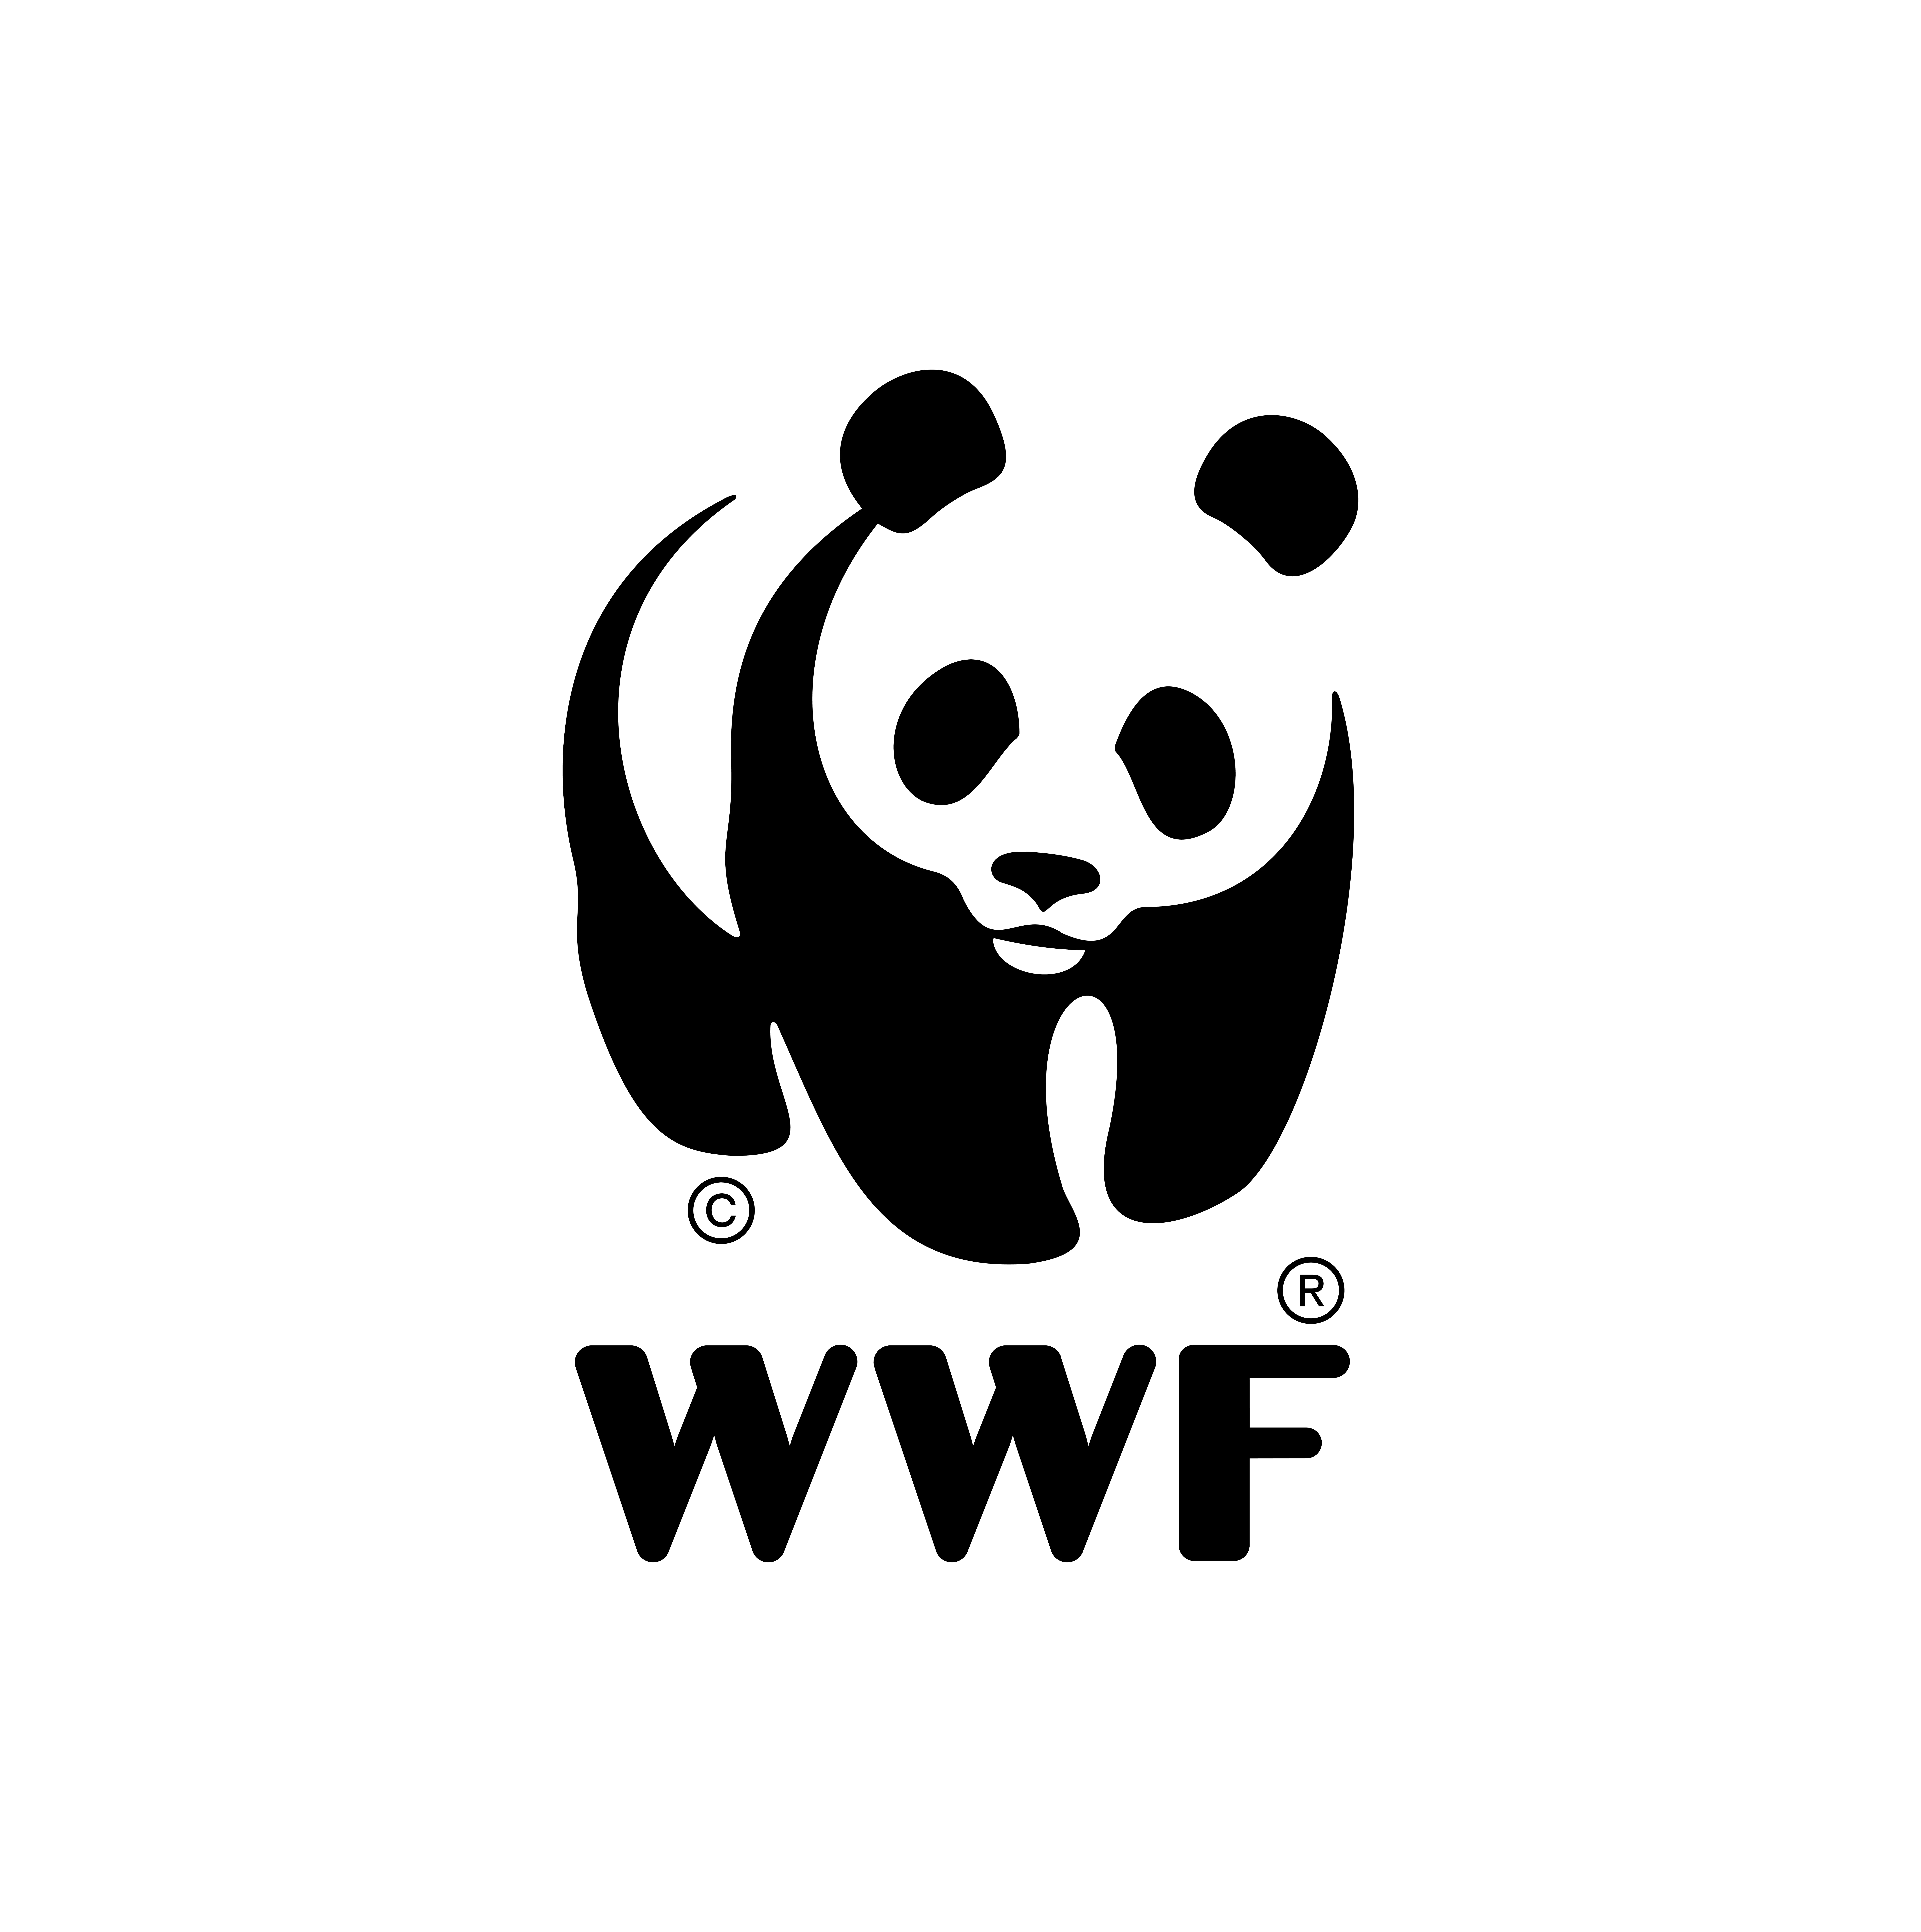 Bescherm de natuur met WWF